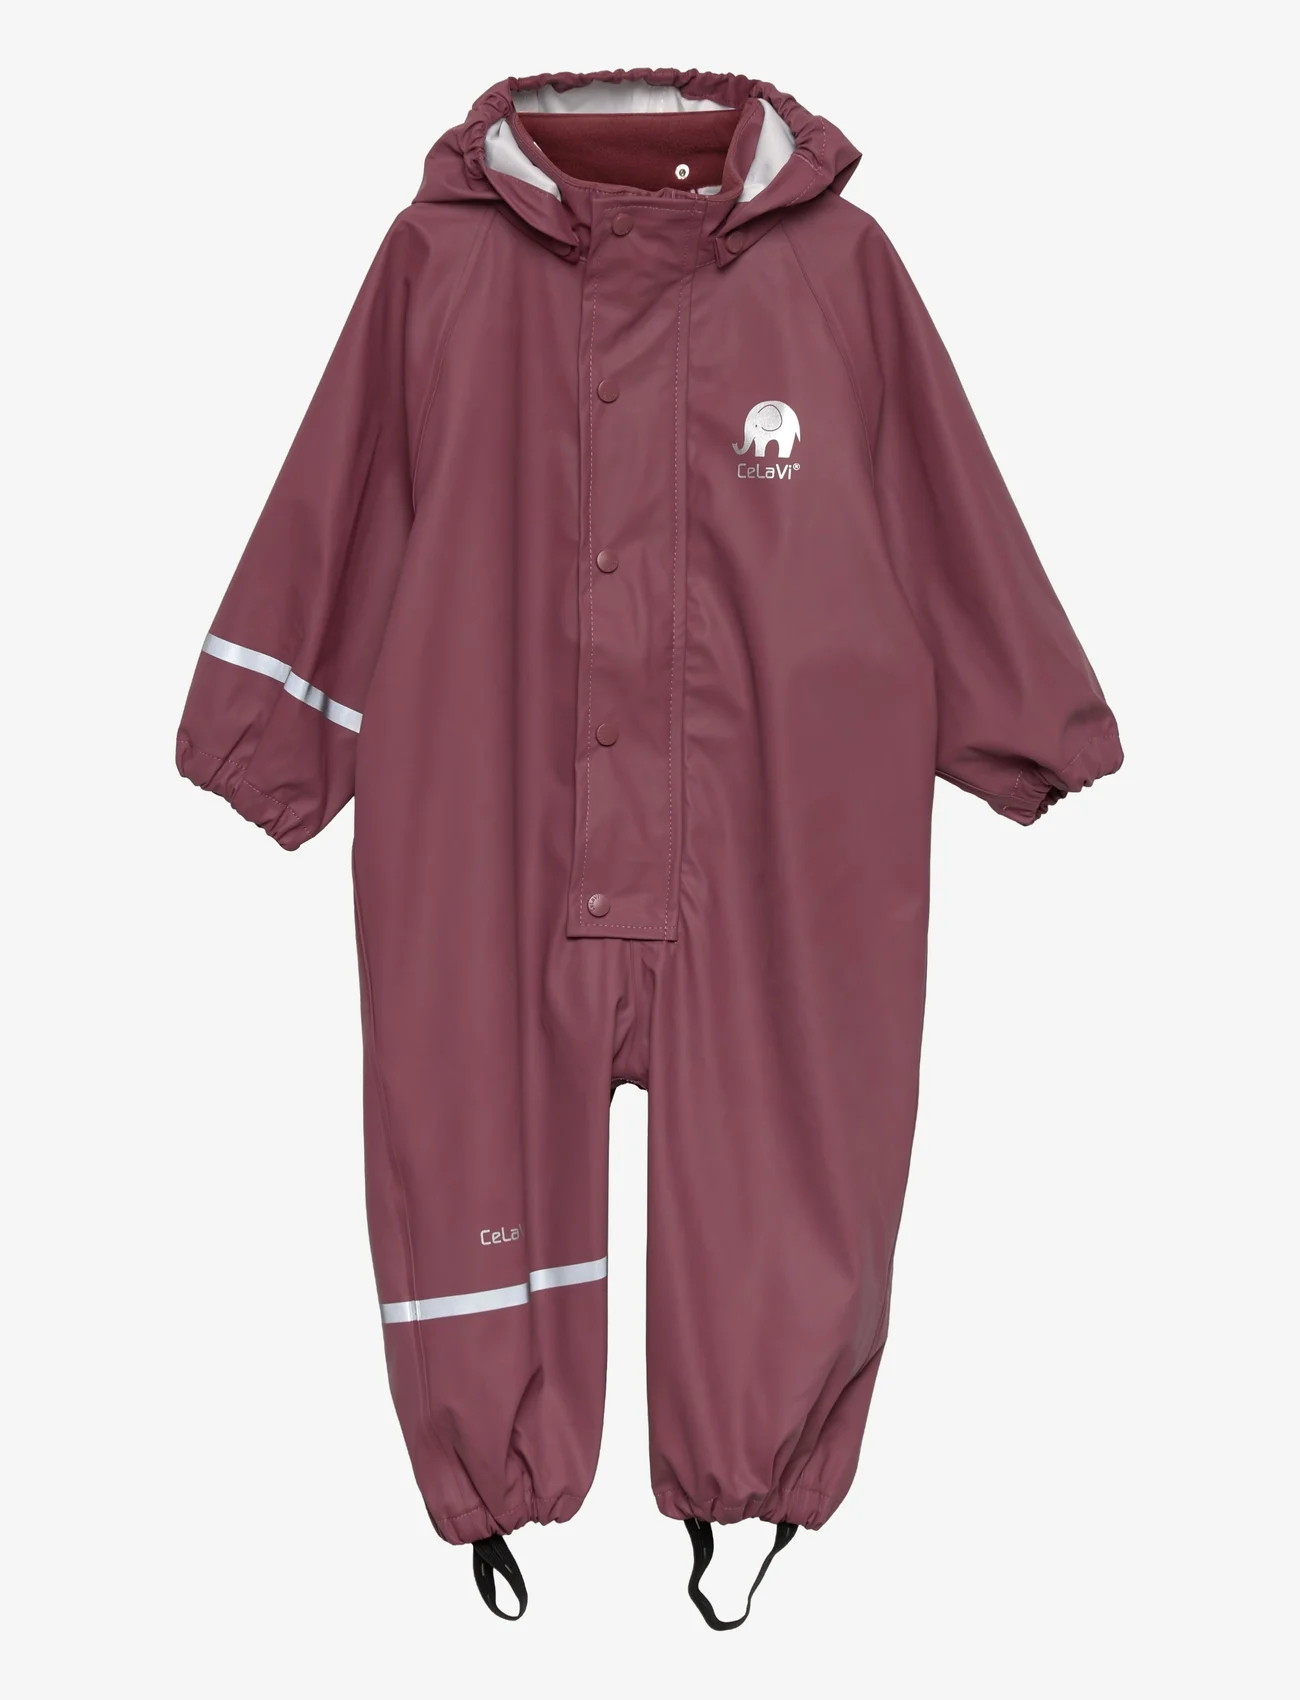 CeLaVi - Rainwear suit -Solid PU - lietus valkā kombinezoni - rose brown - 0